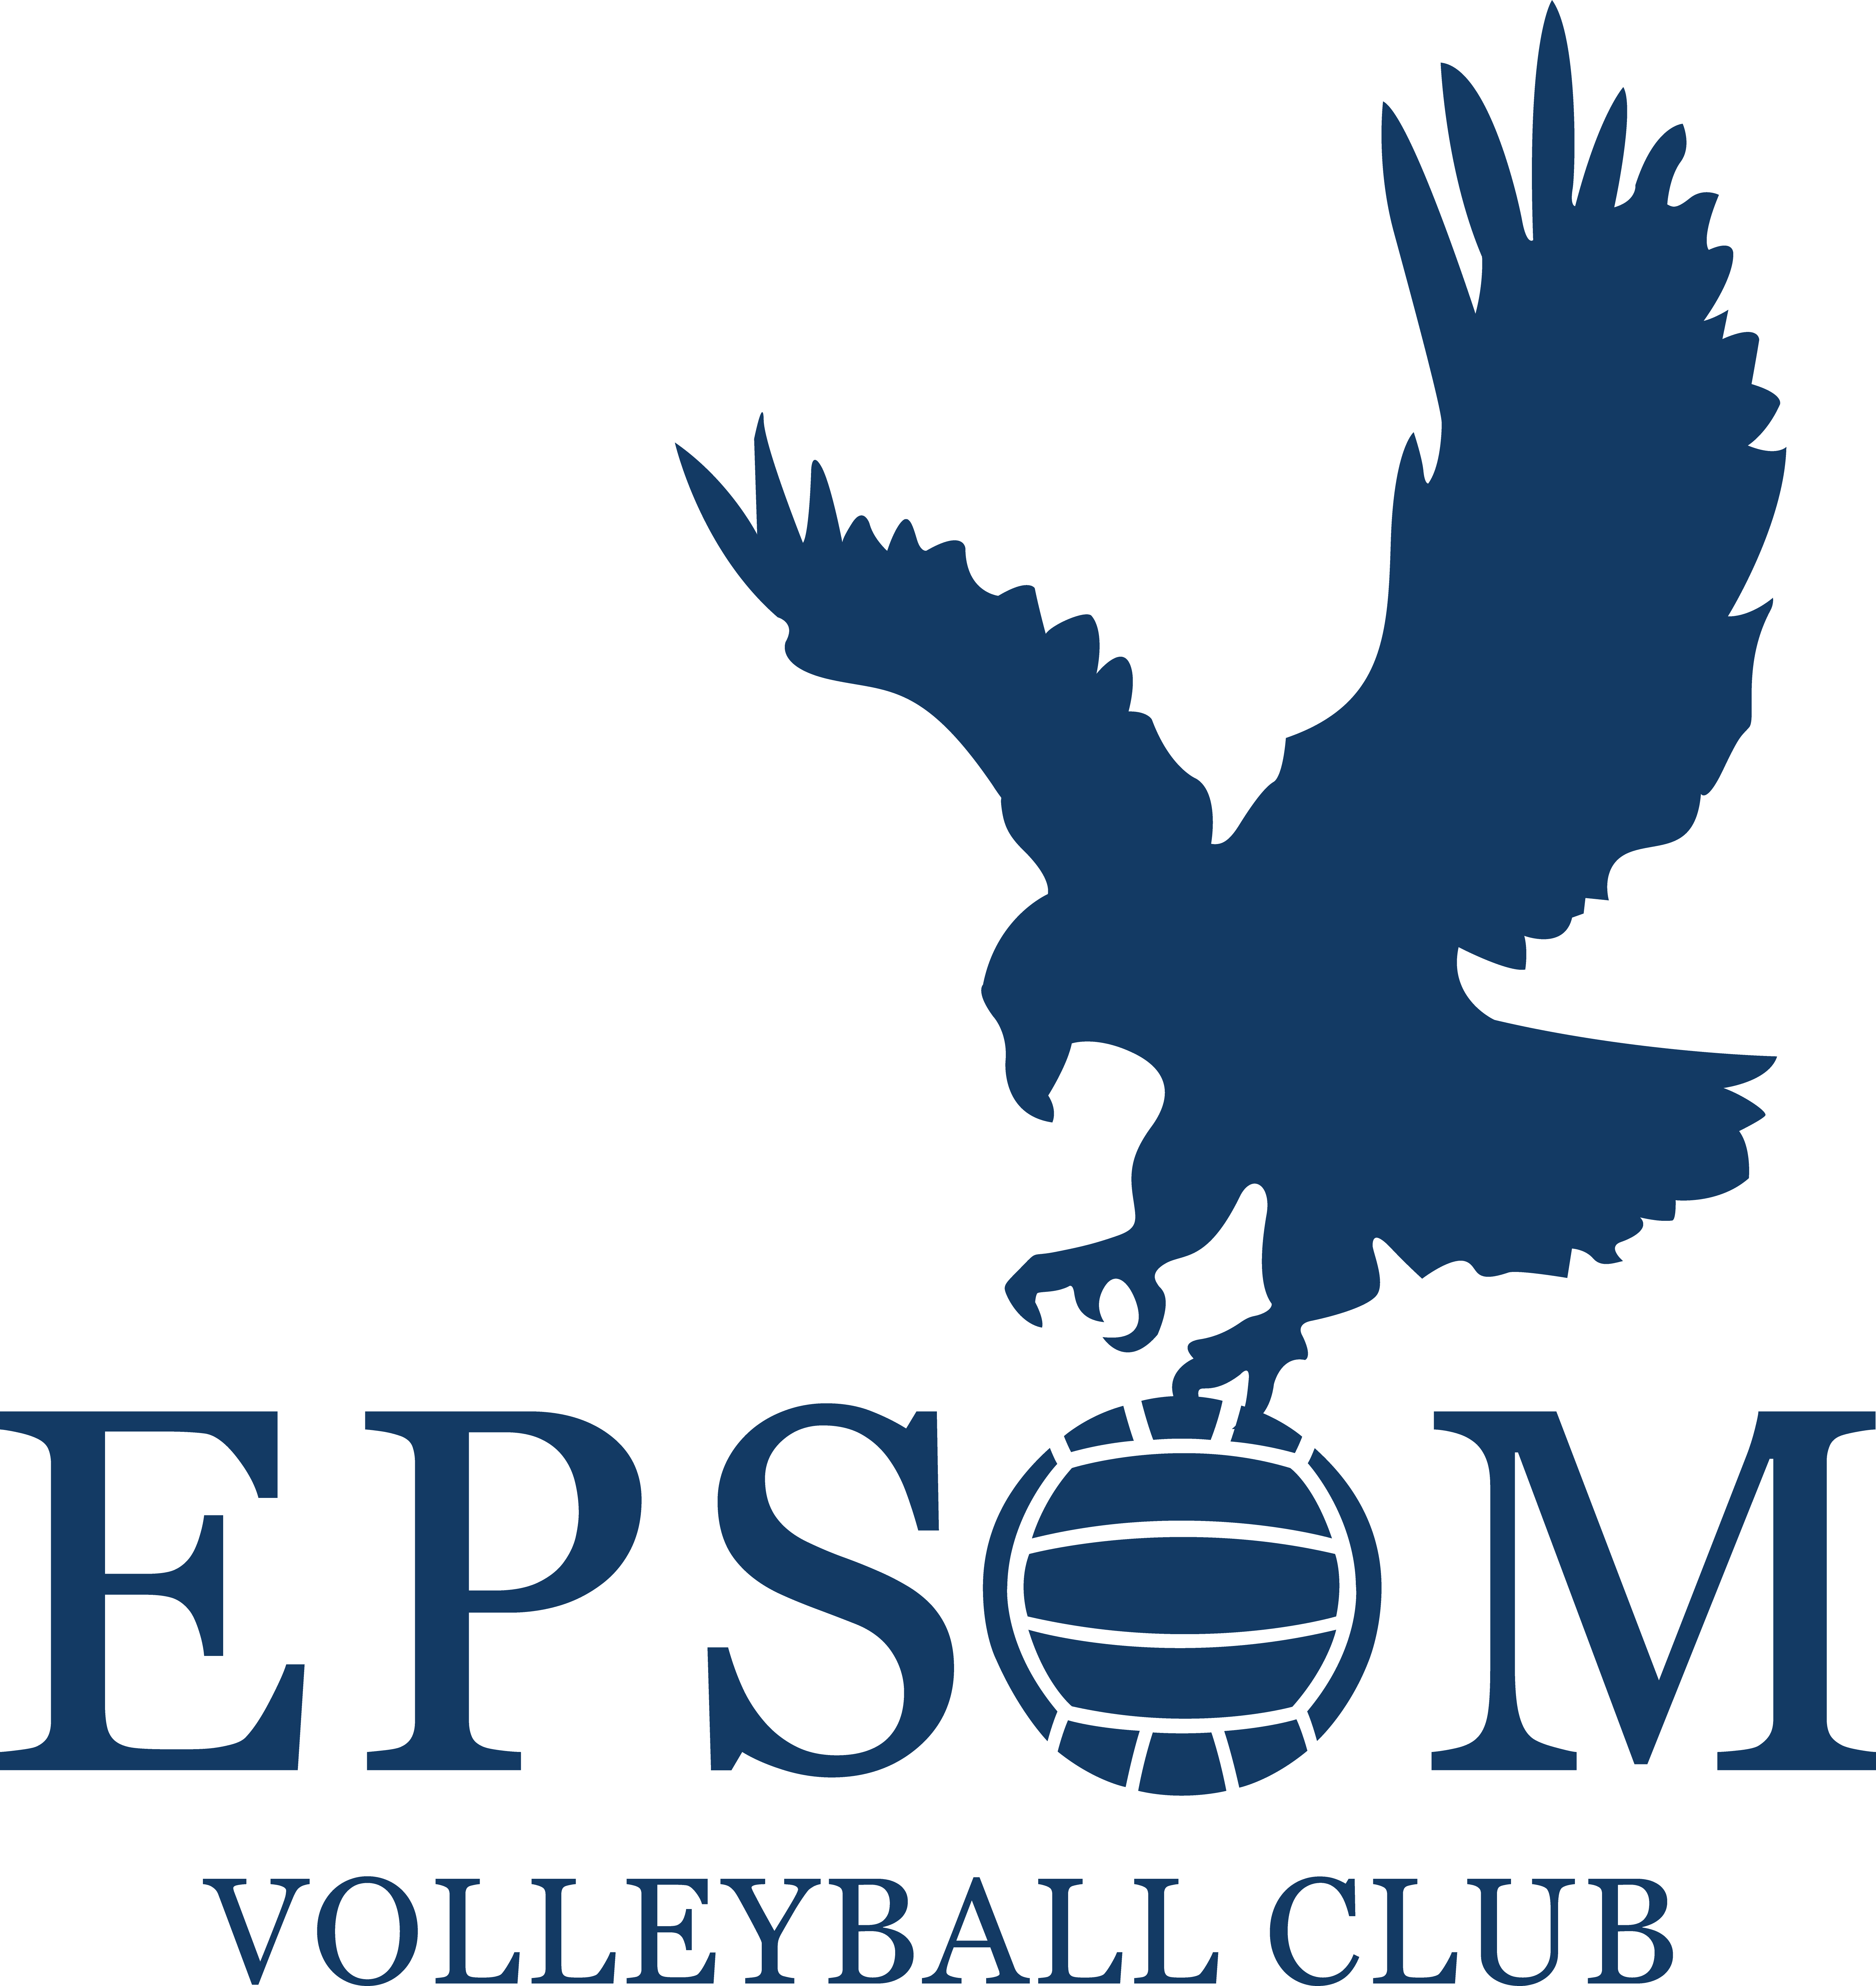 Epsom Volleyball